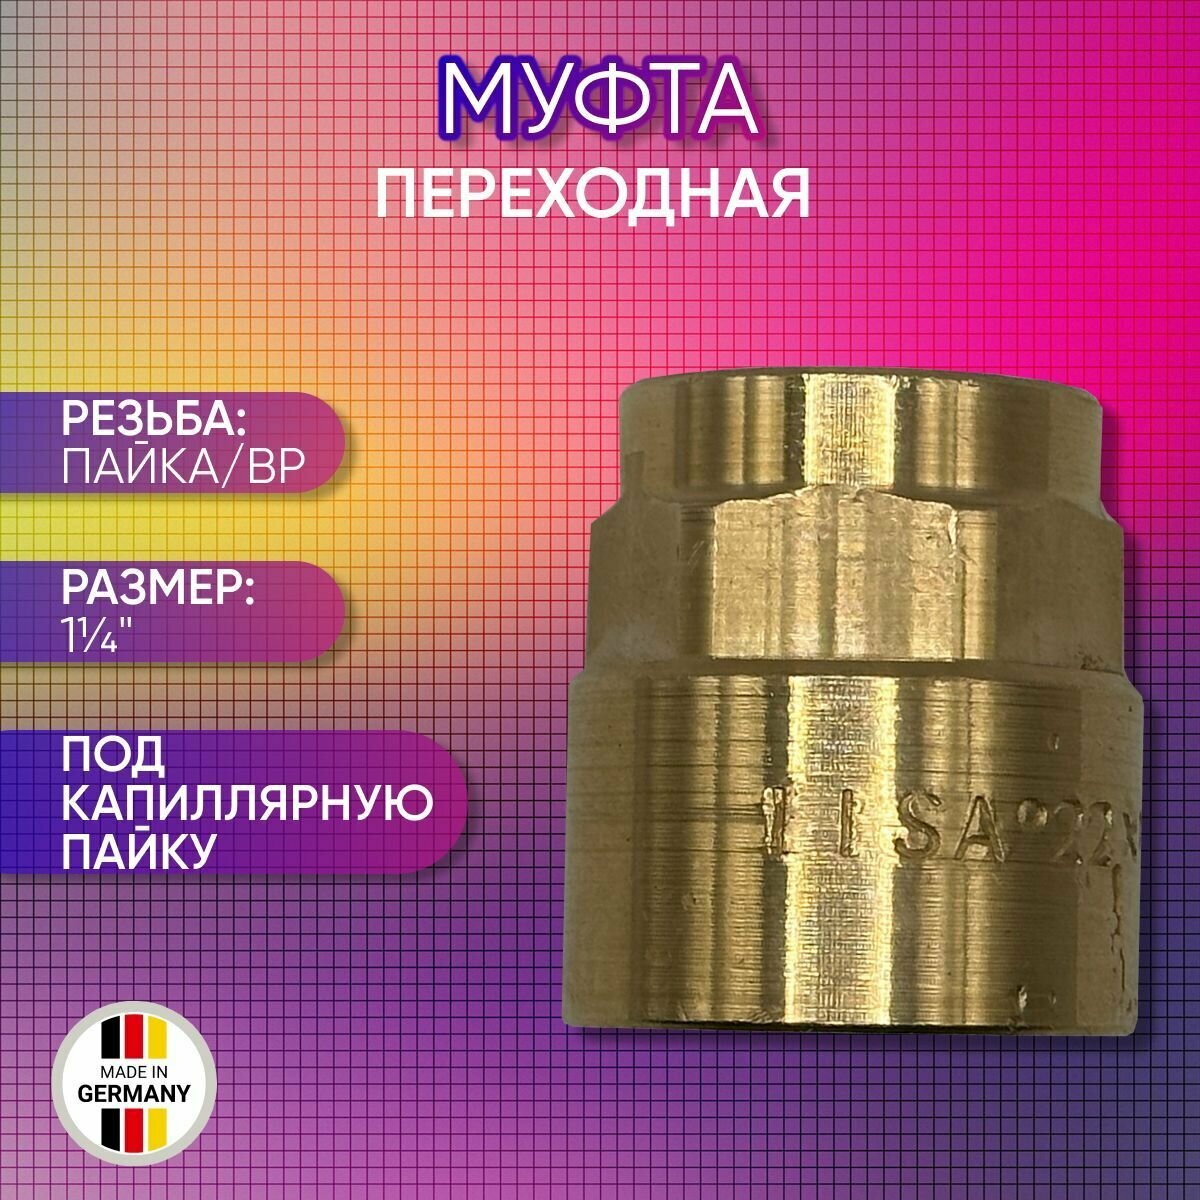 Муфта переходная бронза SANHA арт. 4270g пайка/ВР 10 мм х 3/8